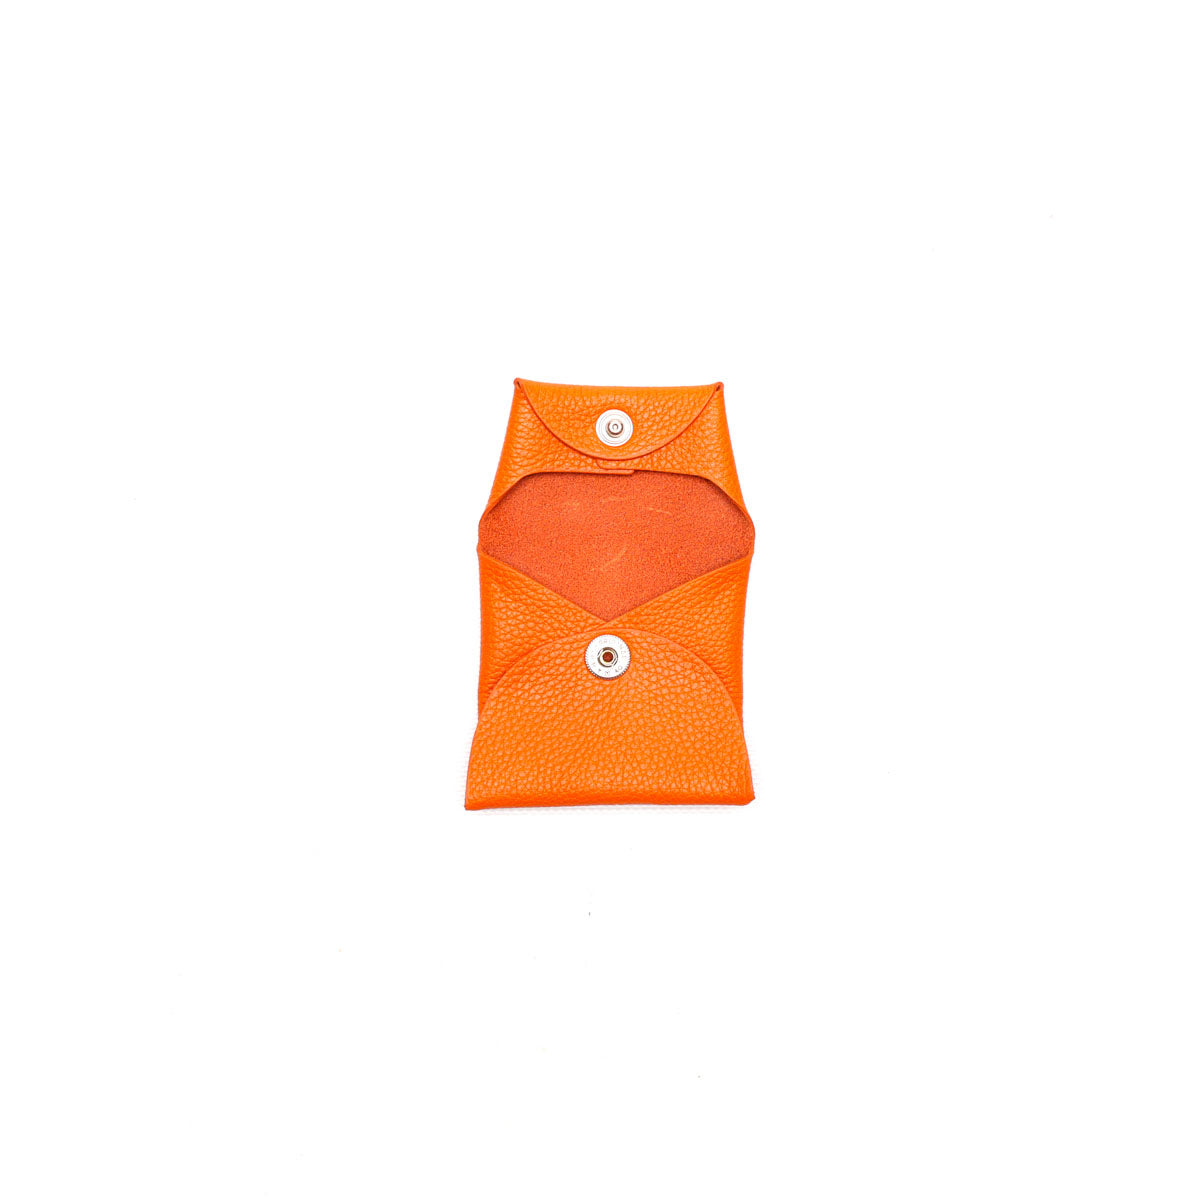 Portamonete con bottone automatico in pelle martellata arancione, prodotto da Pianigiani bags